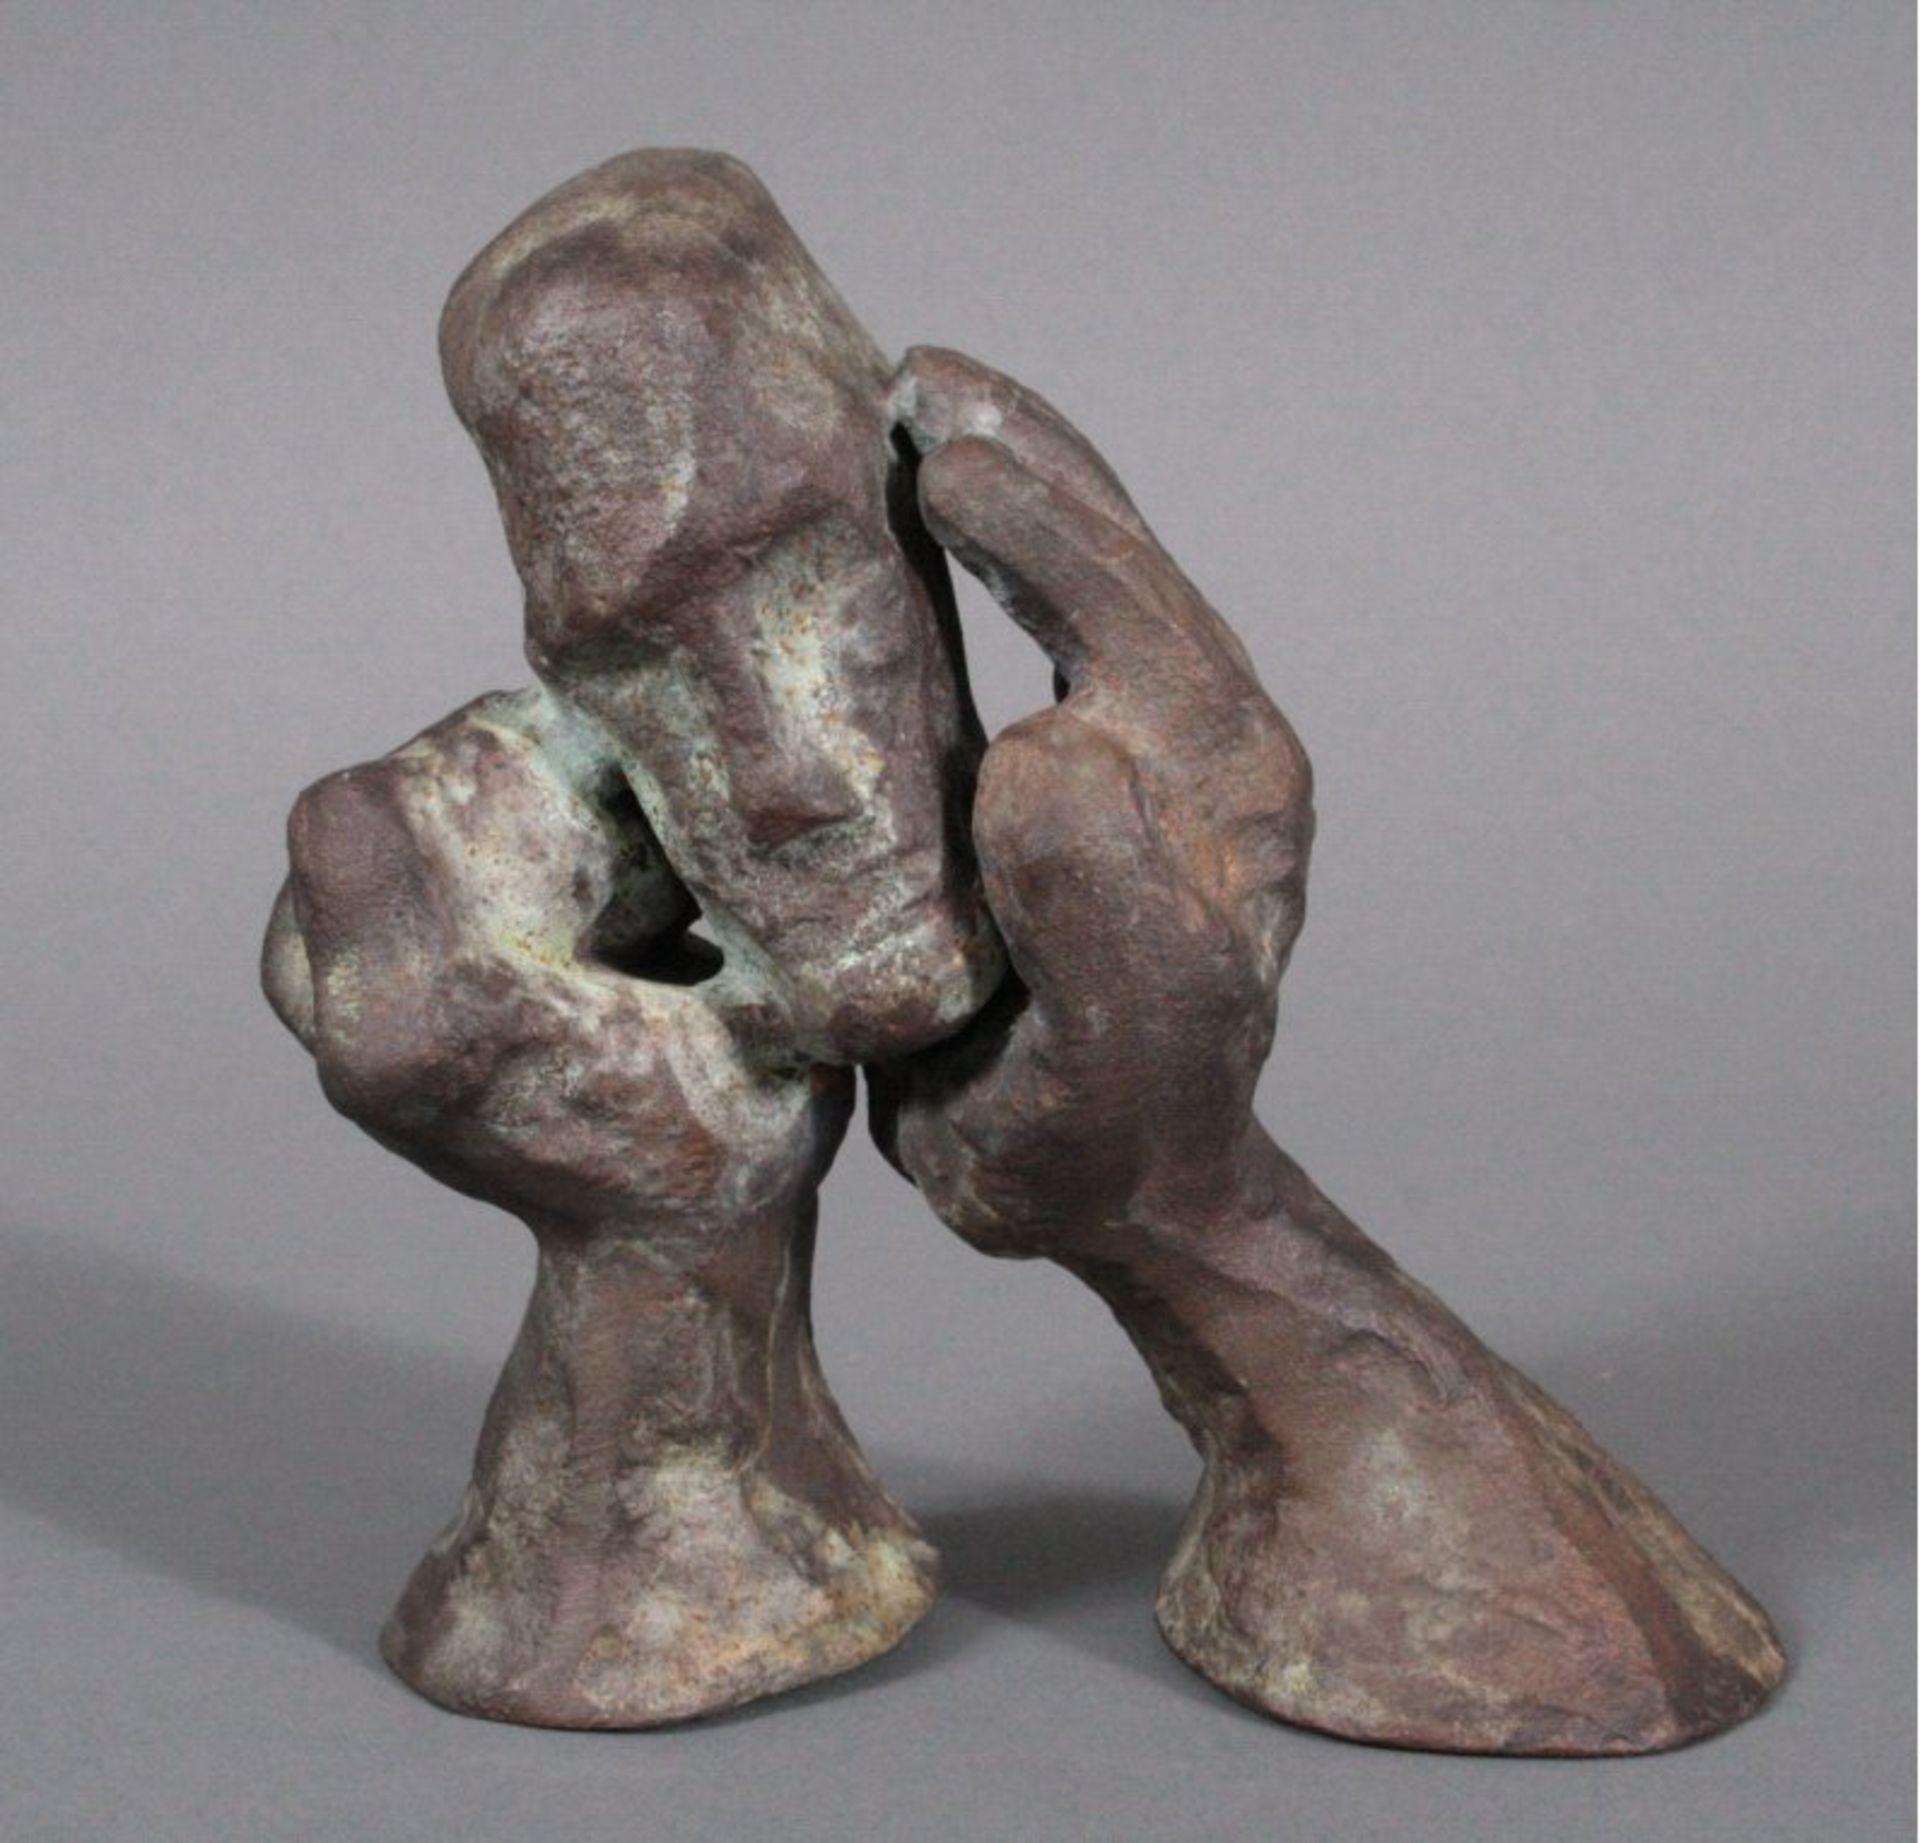 Dieter W. Meding (1942), Bronzeskulptur "Sentino"ca. 14,5x14x7 cm. - Bild 2 aus 3